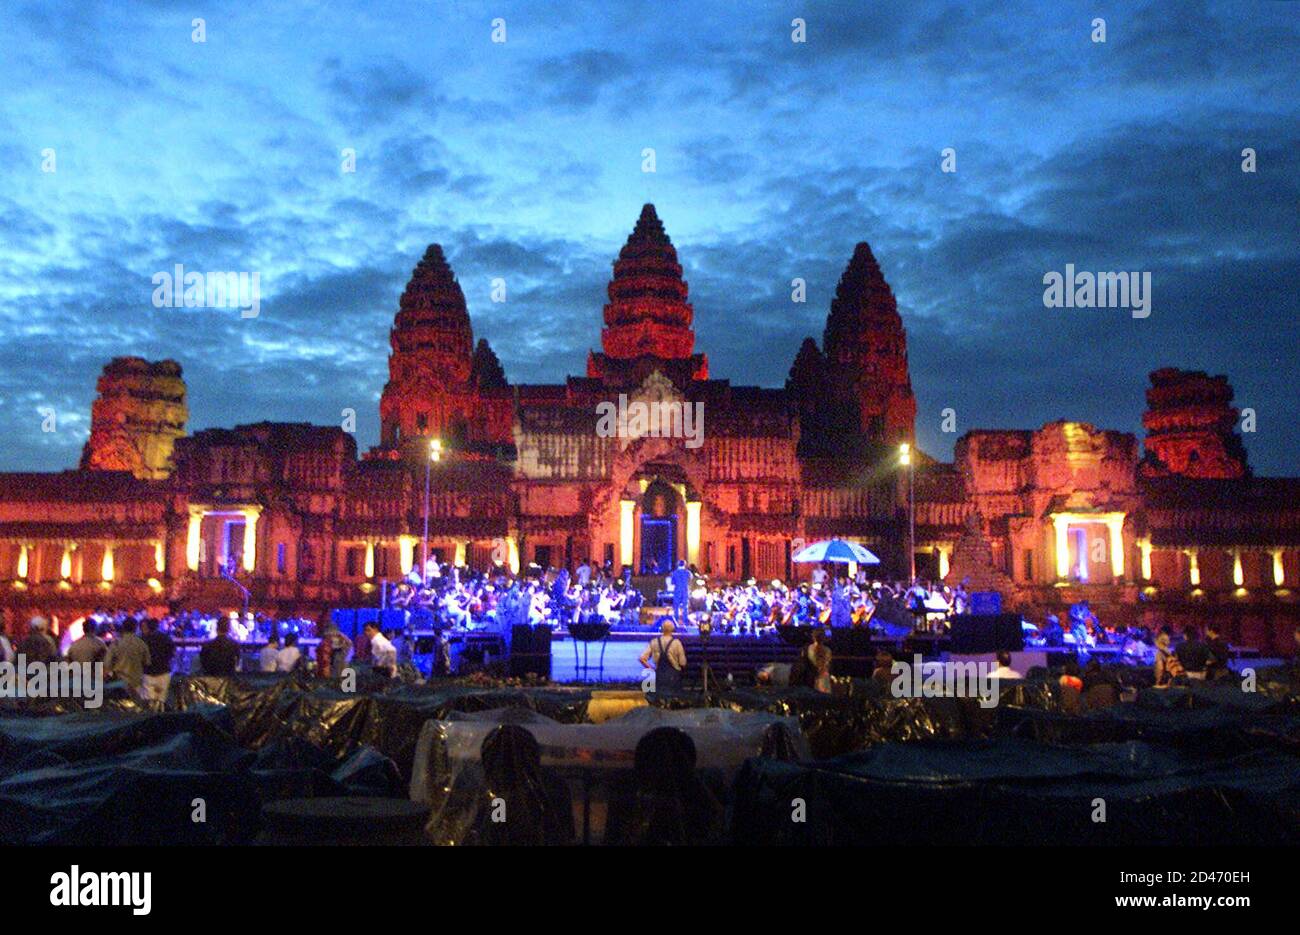 El escenario está preparado para un concierto de caridad del tenor español  José Carreras en el templo del siglo XII de Angkor Wat en el norte de  Camboya 5 de diciembre de